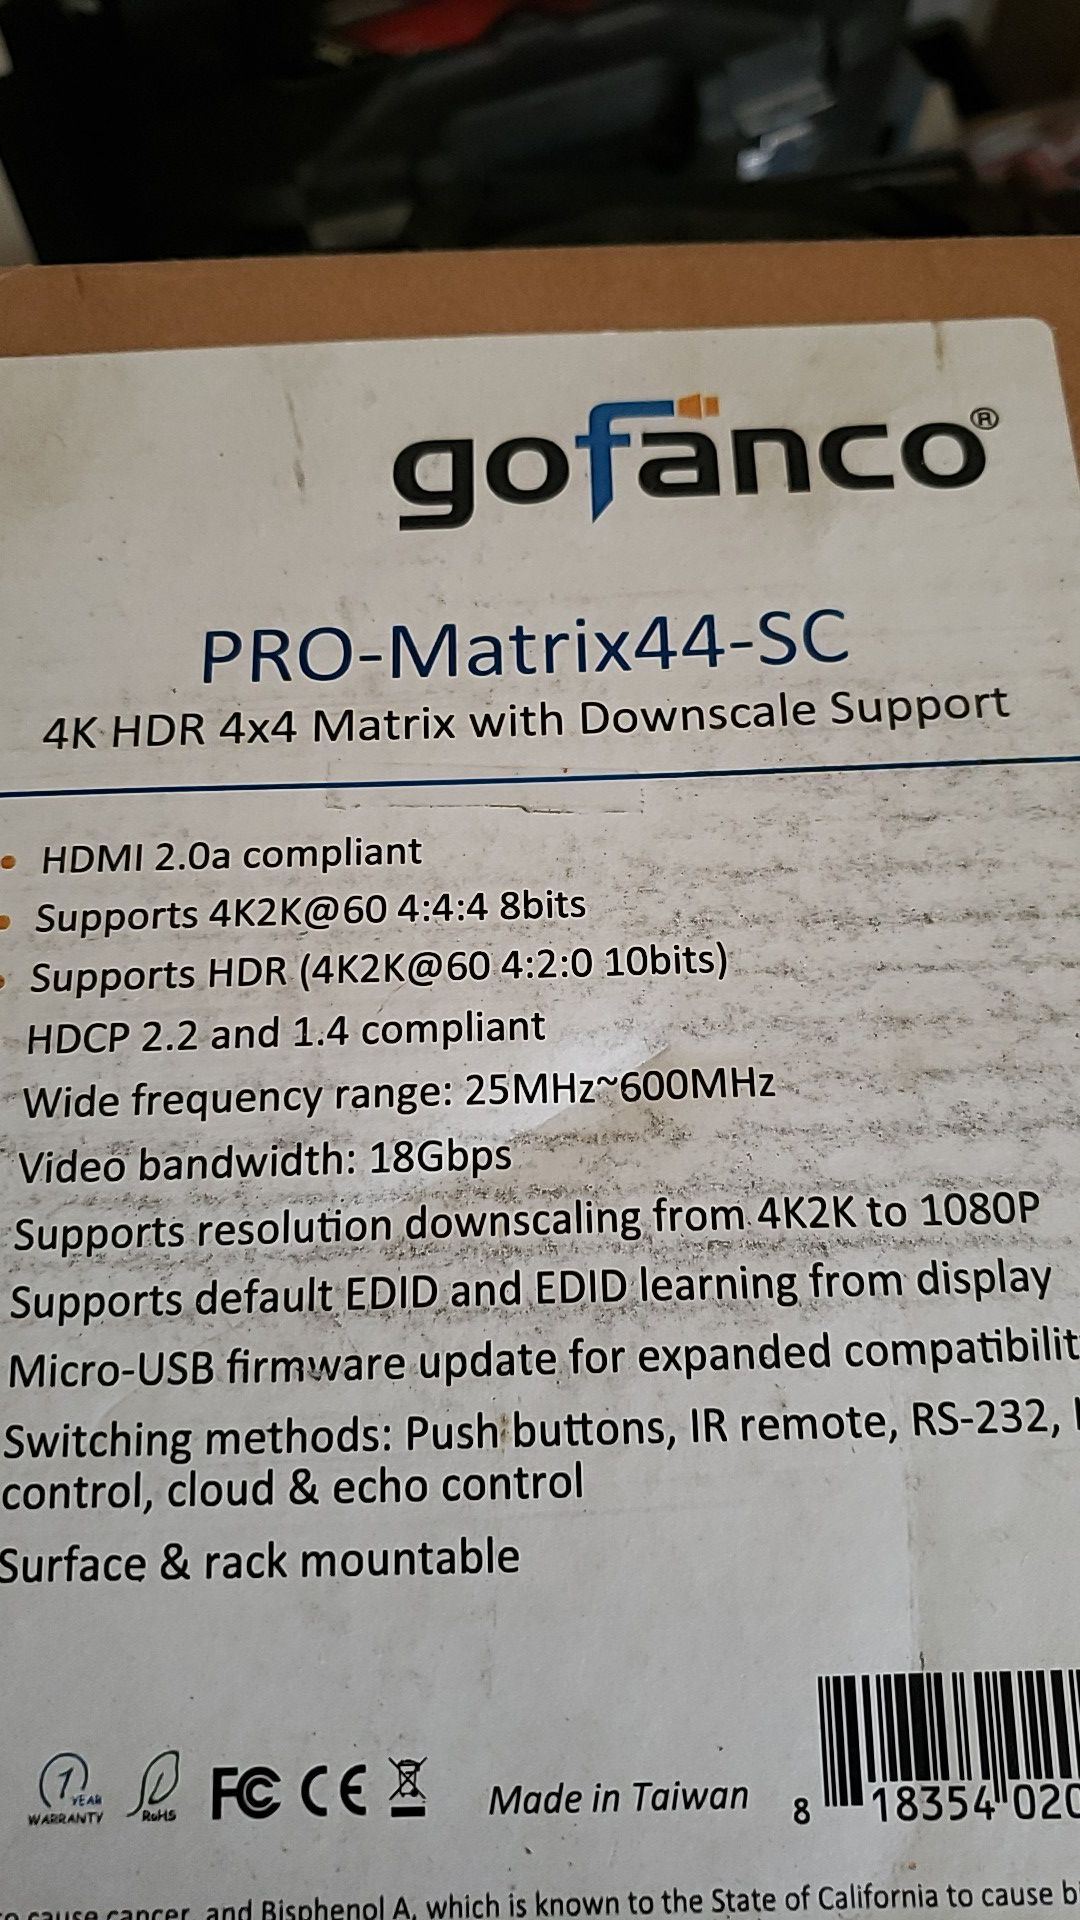 Pro matrix44-sc new